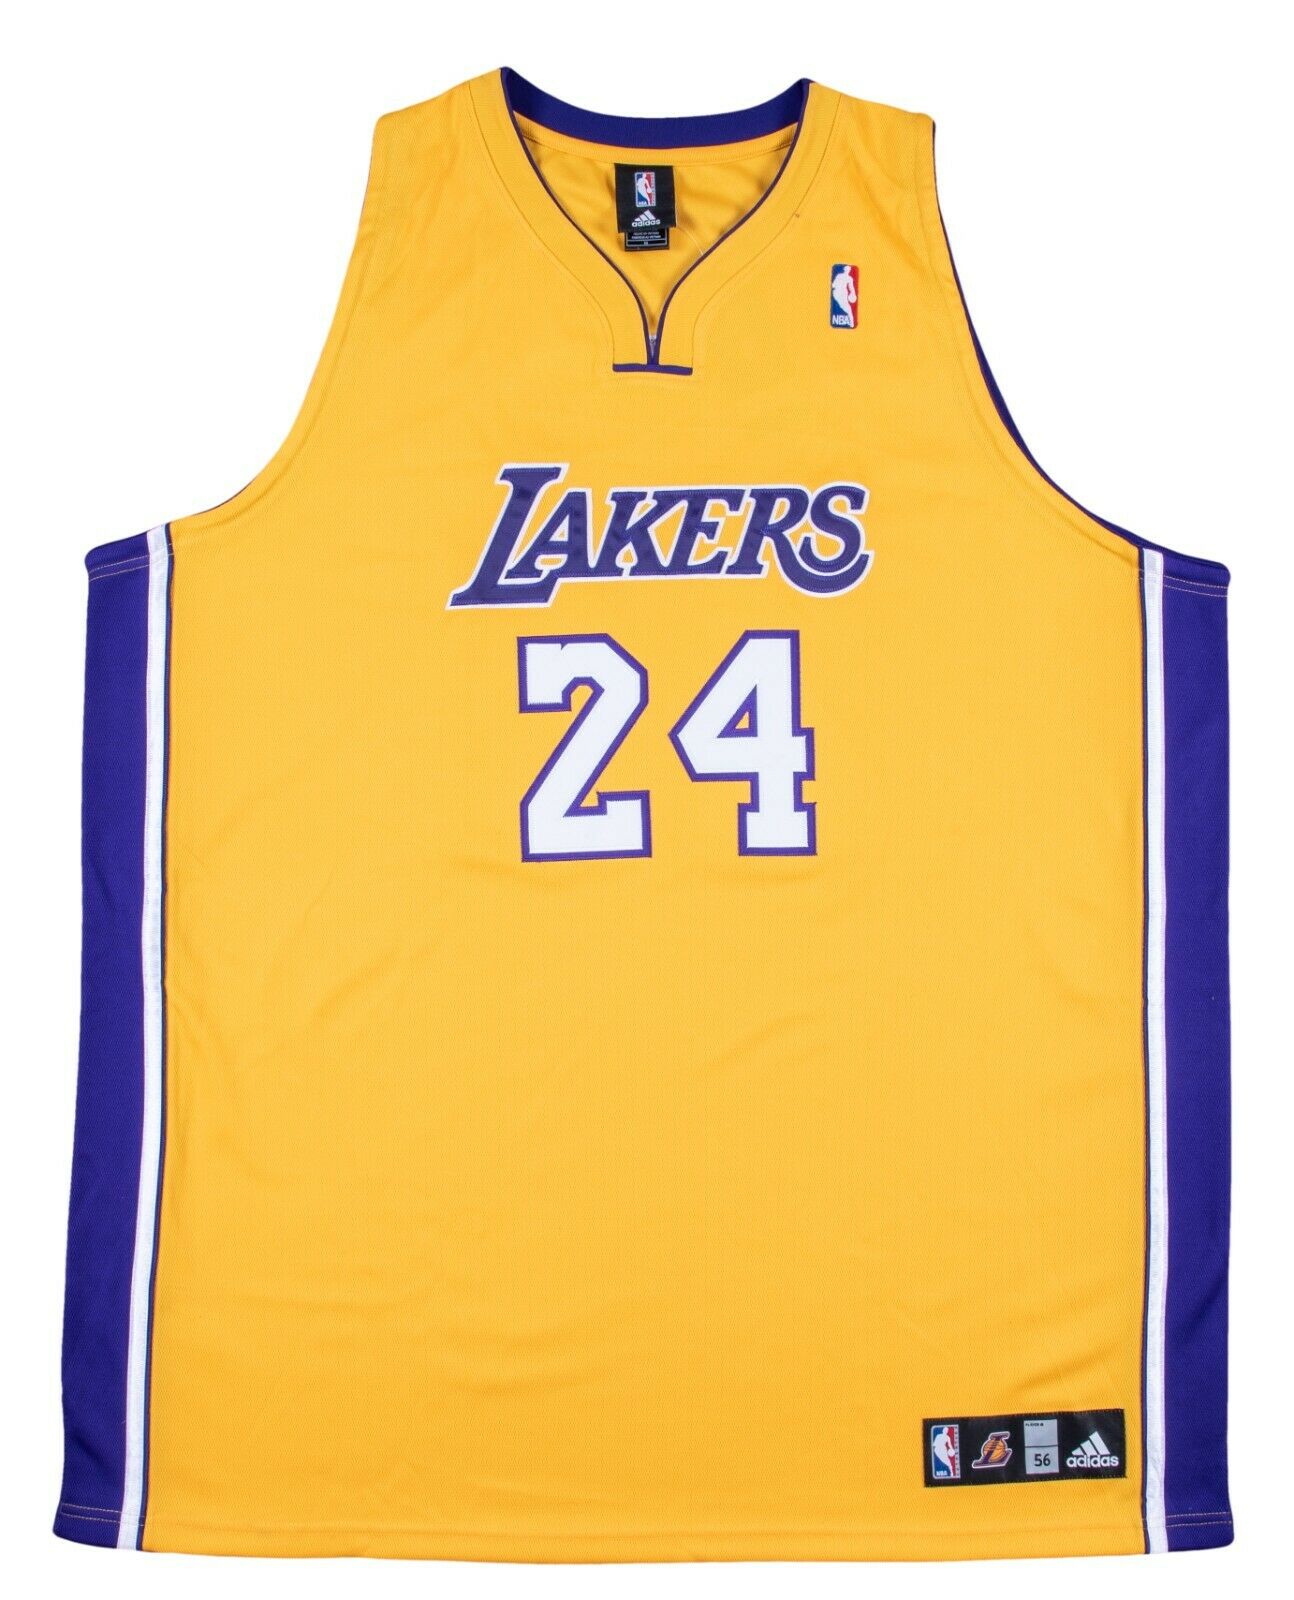 Kobe Bryant 24 Lakers Jersey Purple